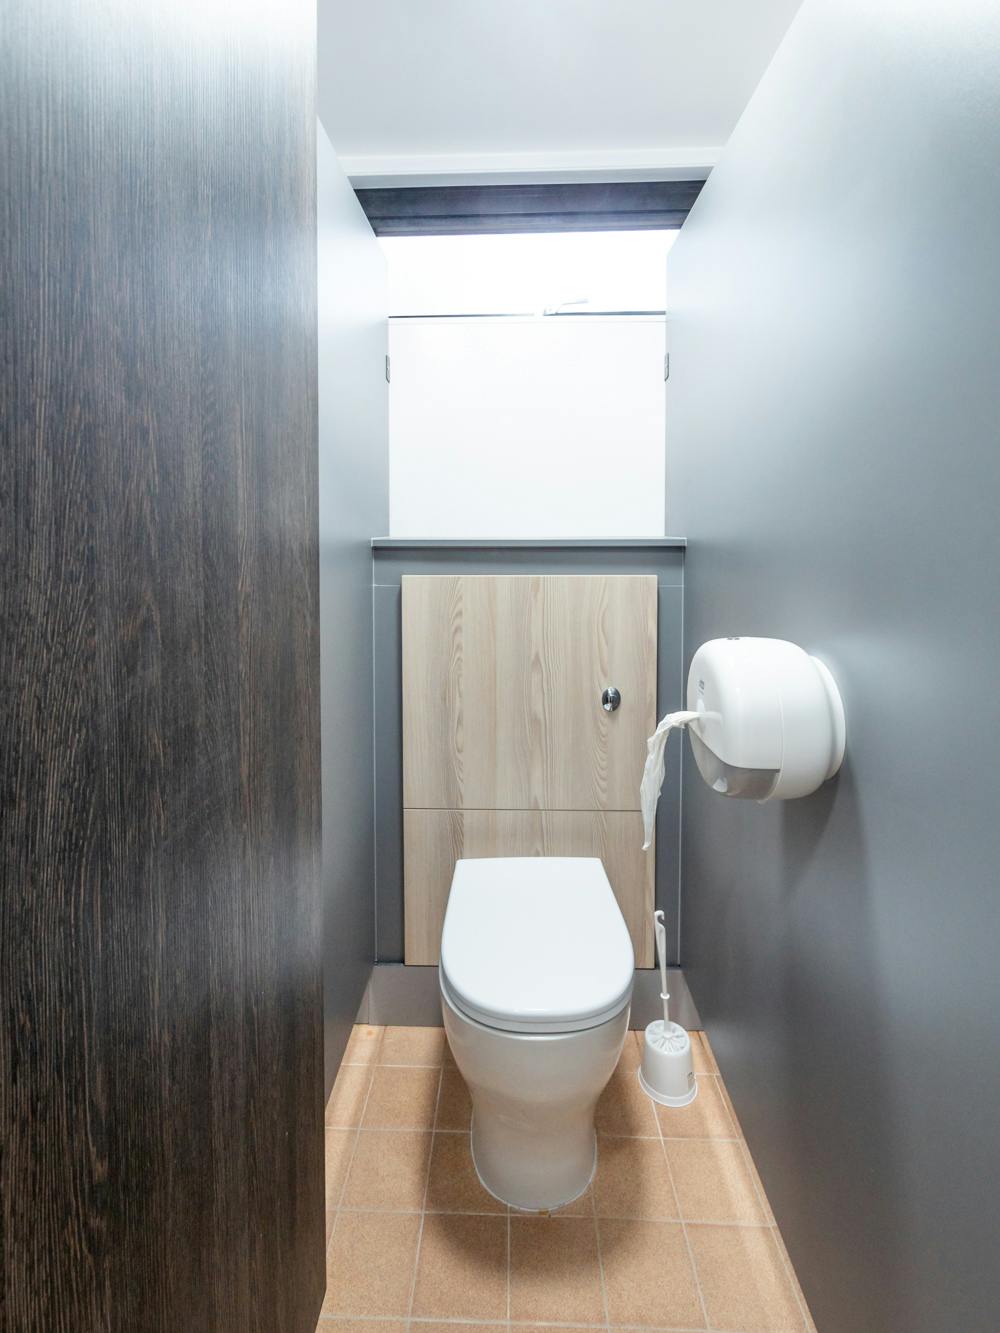 toilet facilities in uwc atlantic college dorm